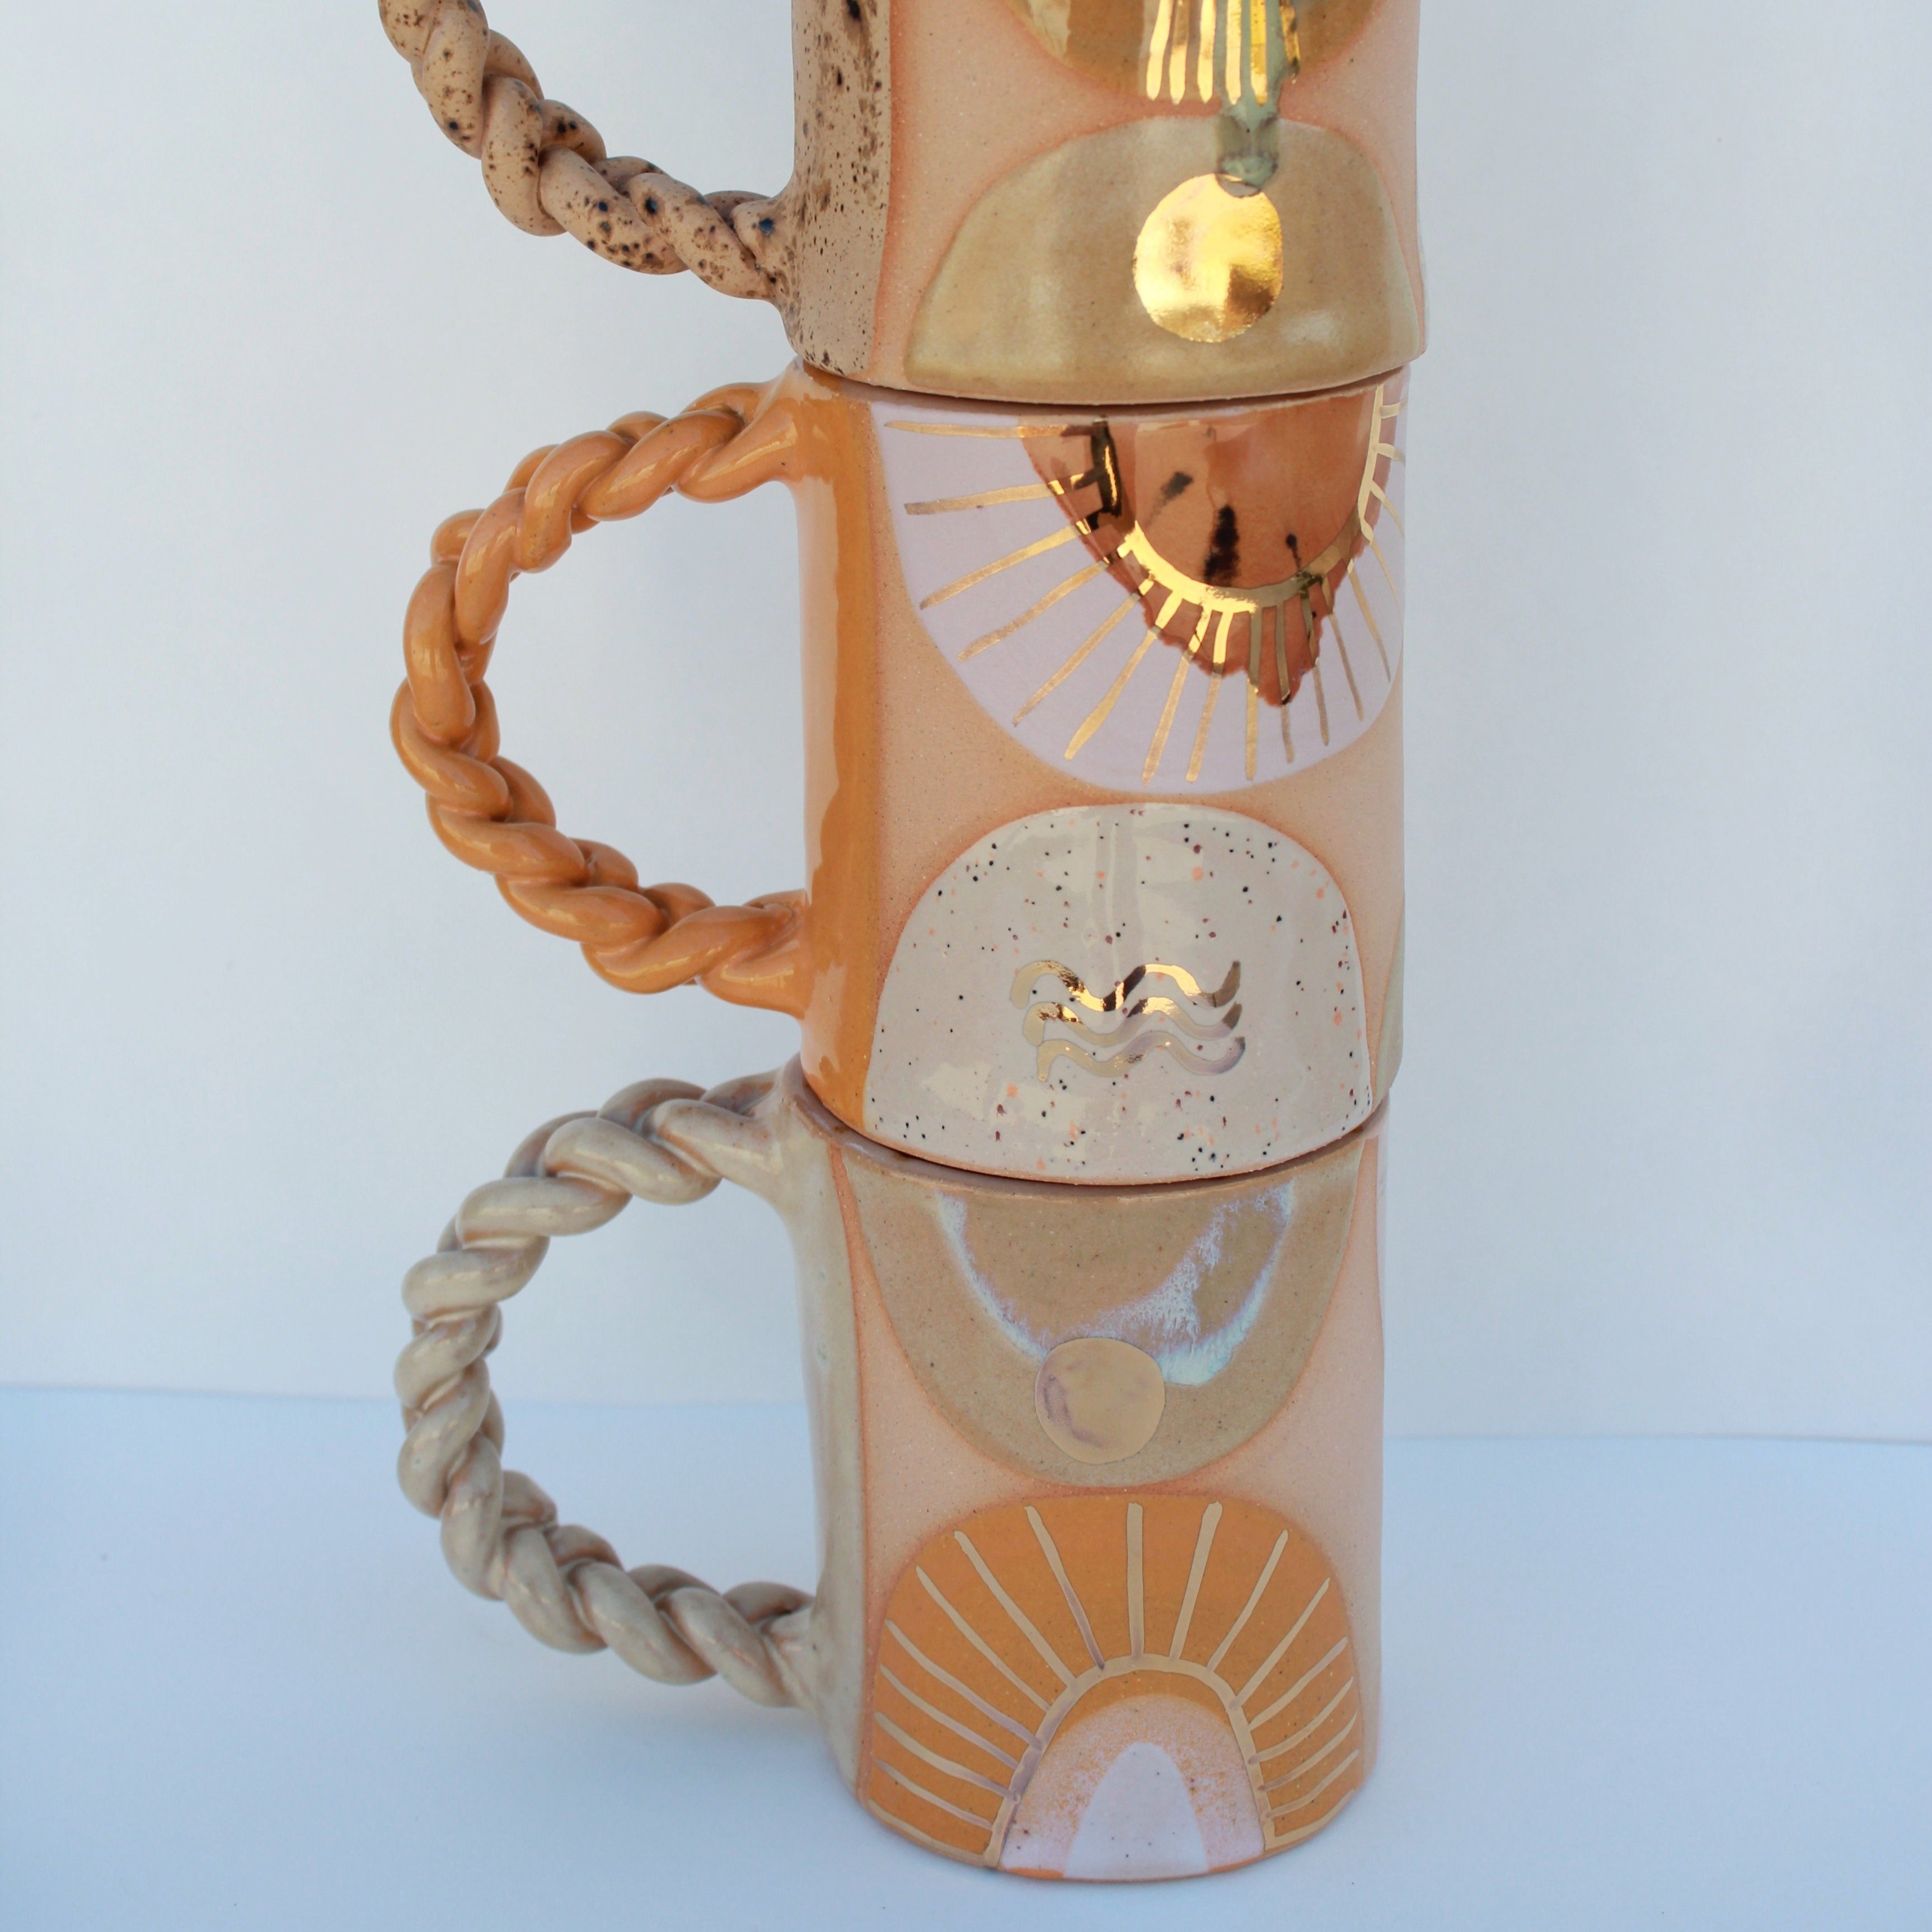 Ceramic Braided Mug